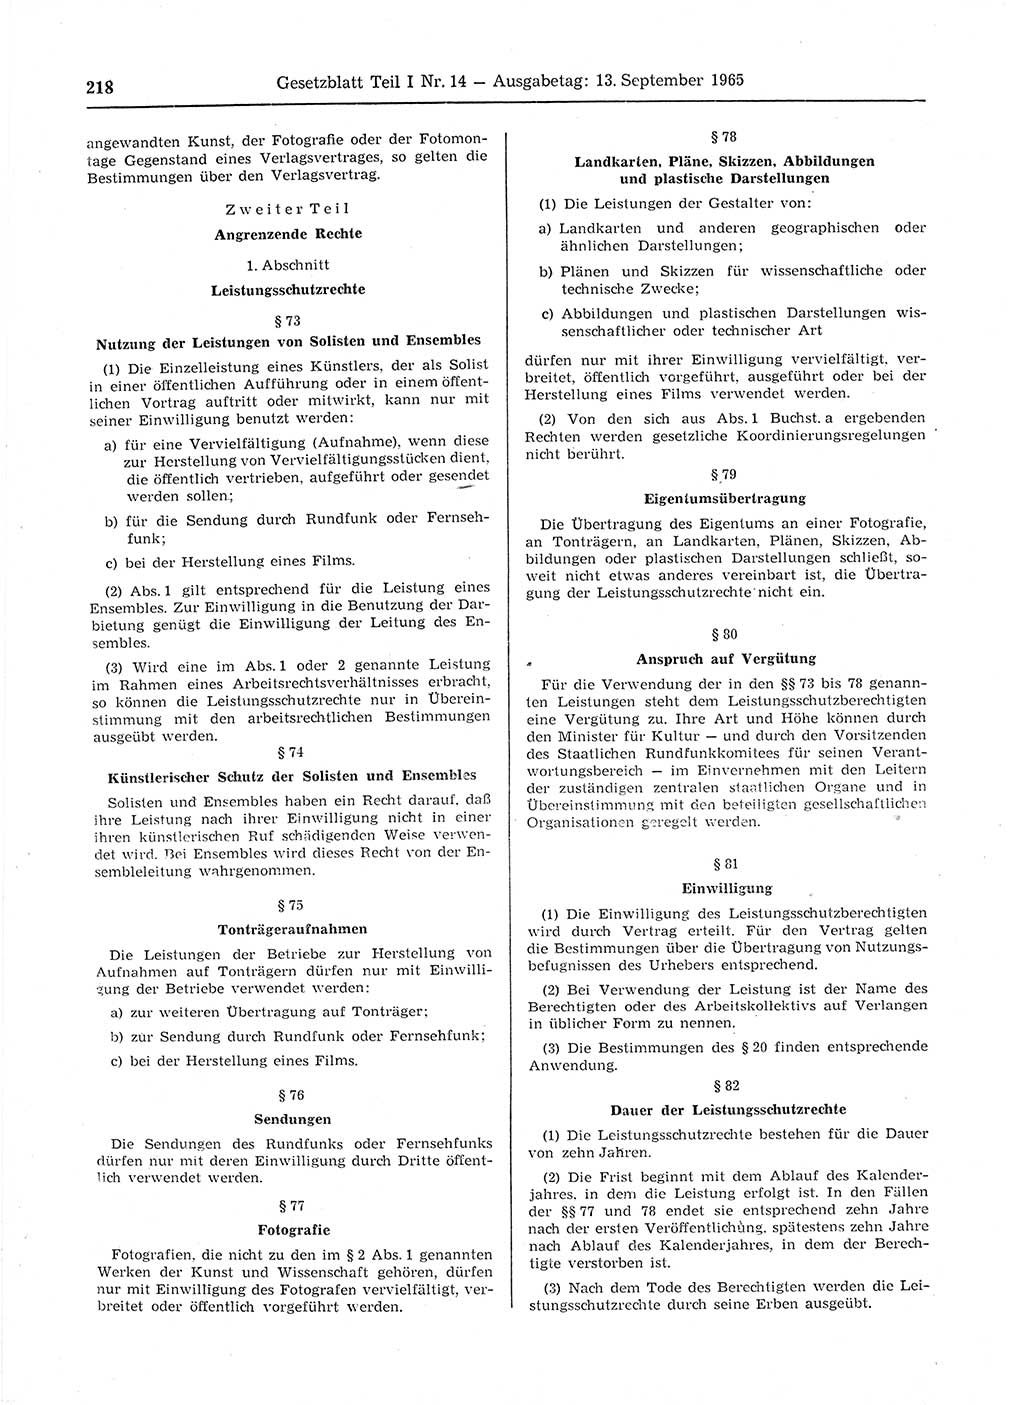 Gesetzblatt (GBl.) der Deutschen Demokratischen Republik (DDR) Teil Ⅰ 1965, Seite 218 (GBl. DDR Ⅰ 1965, S. 218)